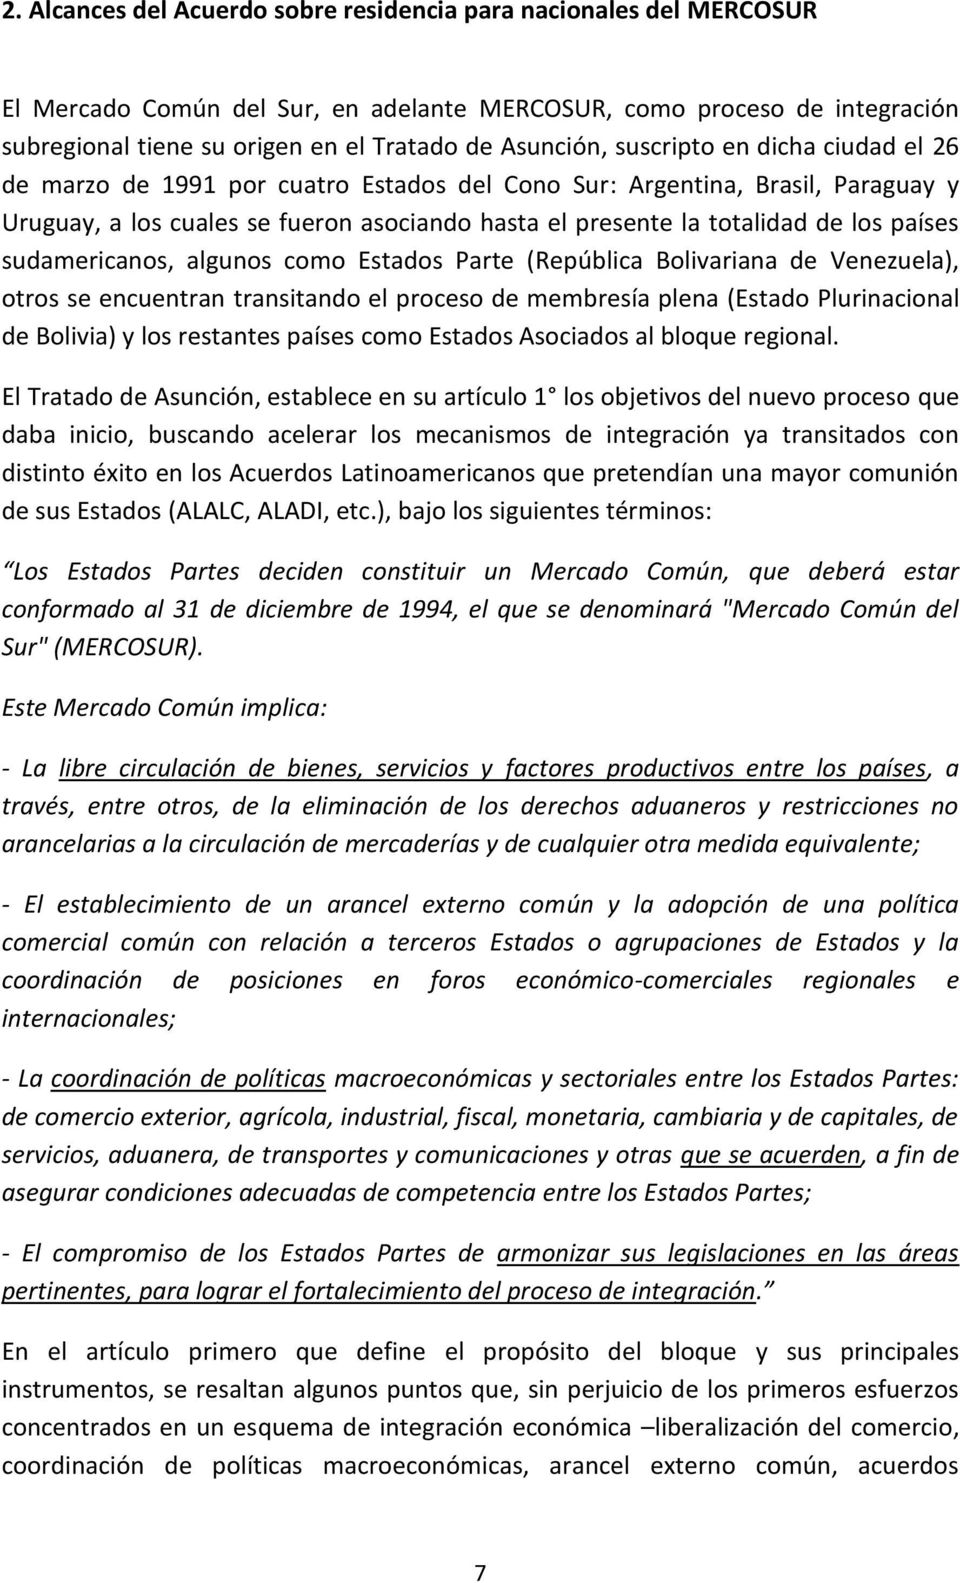 los países sudamericanos, algunos como Estados Parte (República Bolivariana de Venezuela), otros se encuentran transitando el proceso de membresía plena (Estado Plurinacional de Bolivia) y los